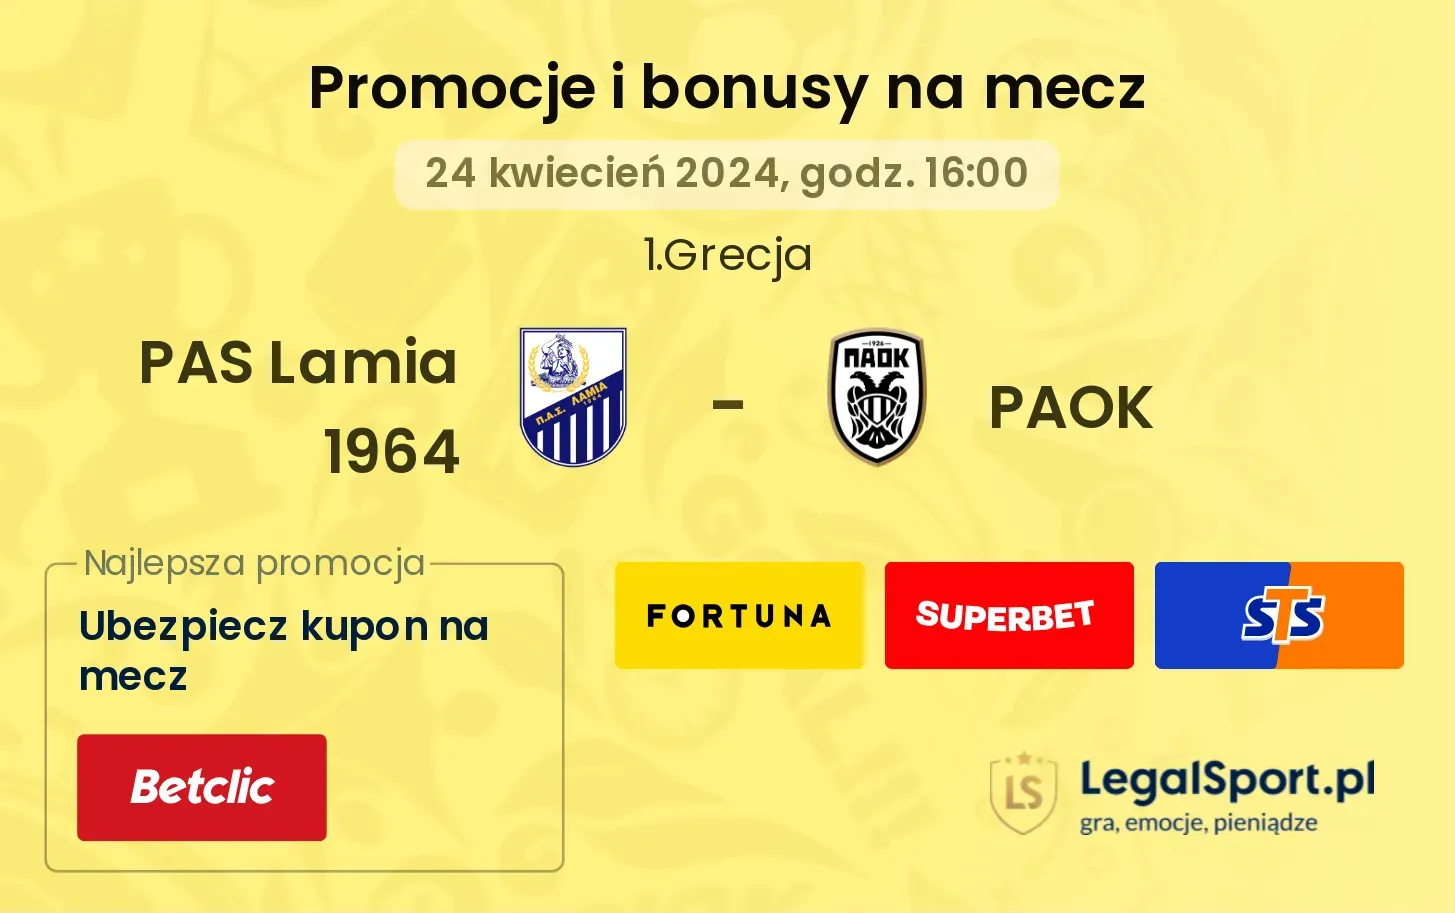 PAS Lamia 1964 - PAOK promocje bonusy na mecz